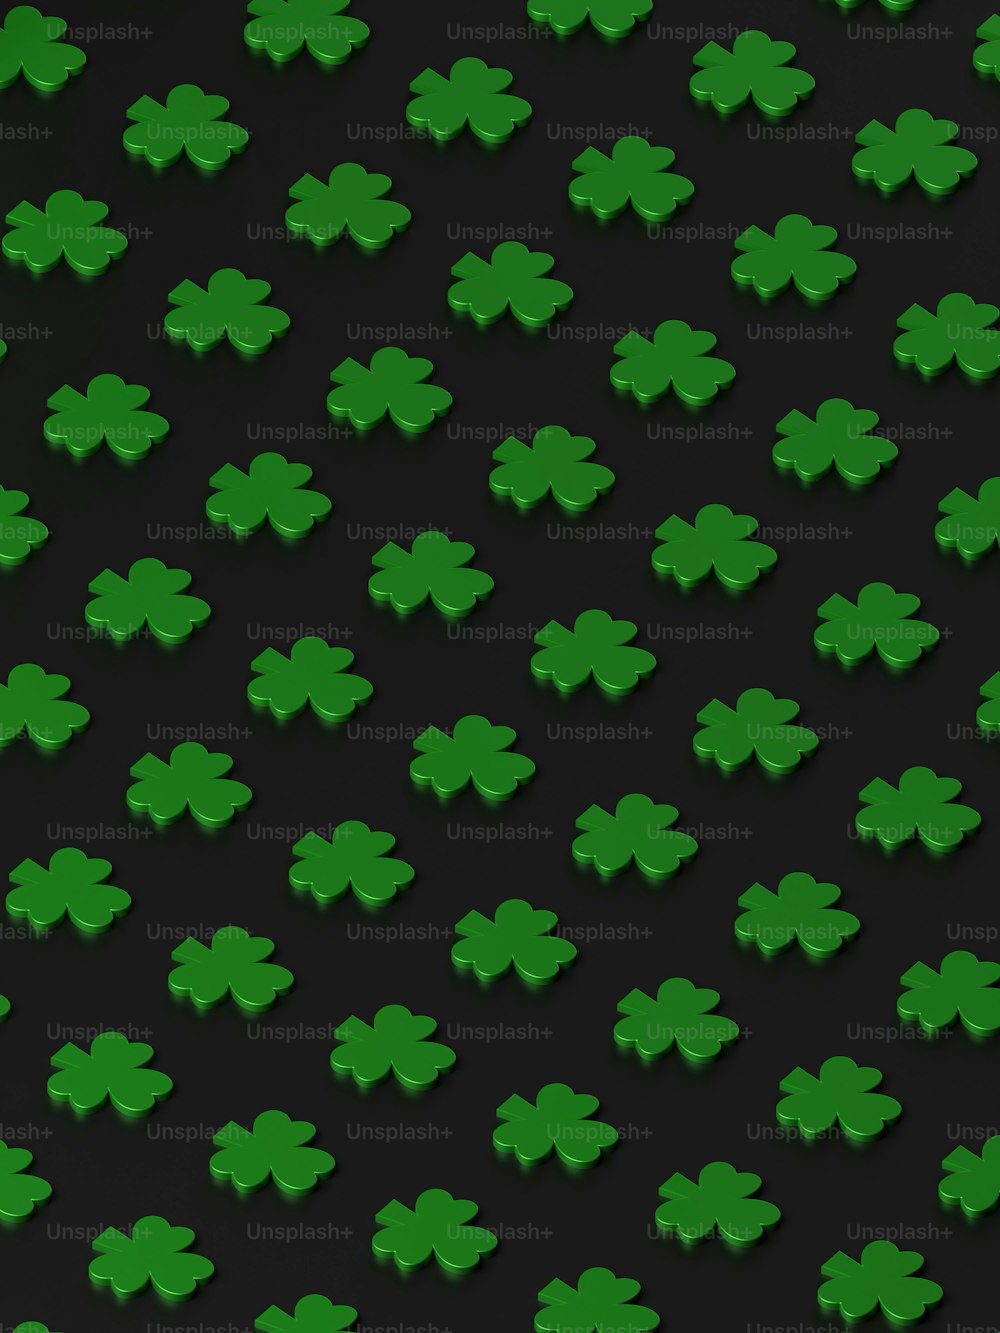 Un gruppo di trifogli verdi su uno sfondo nero